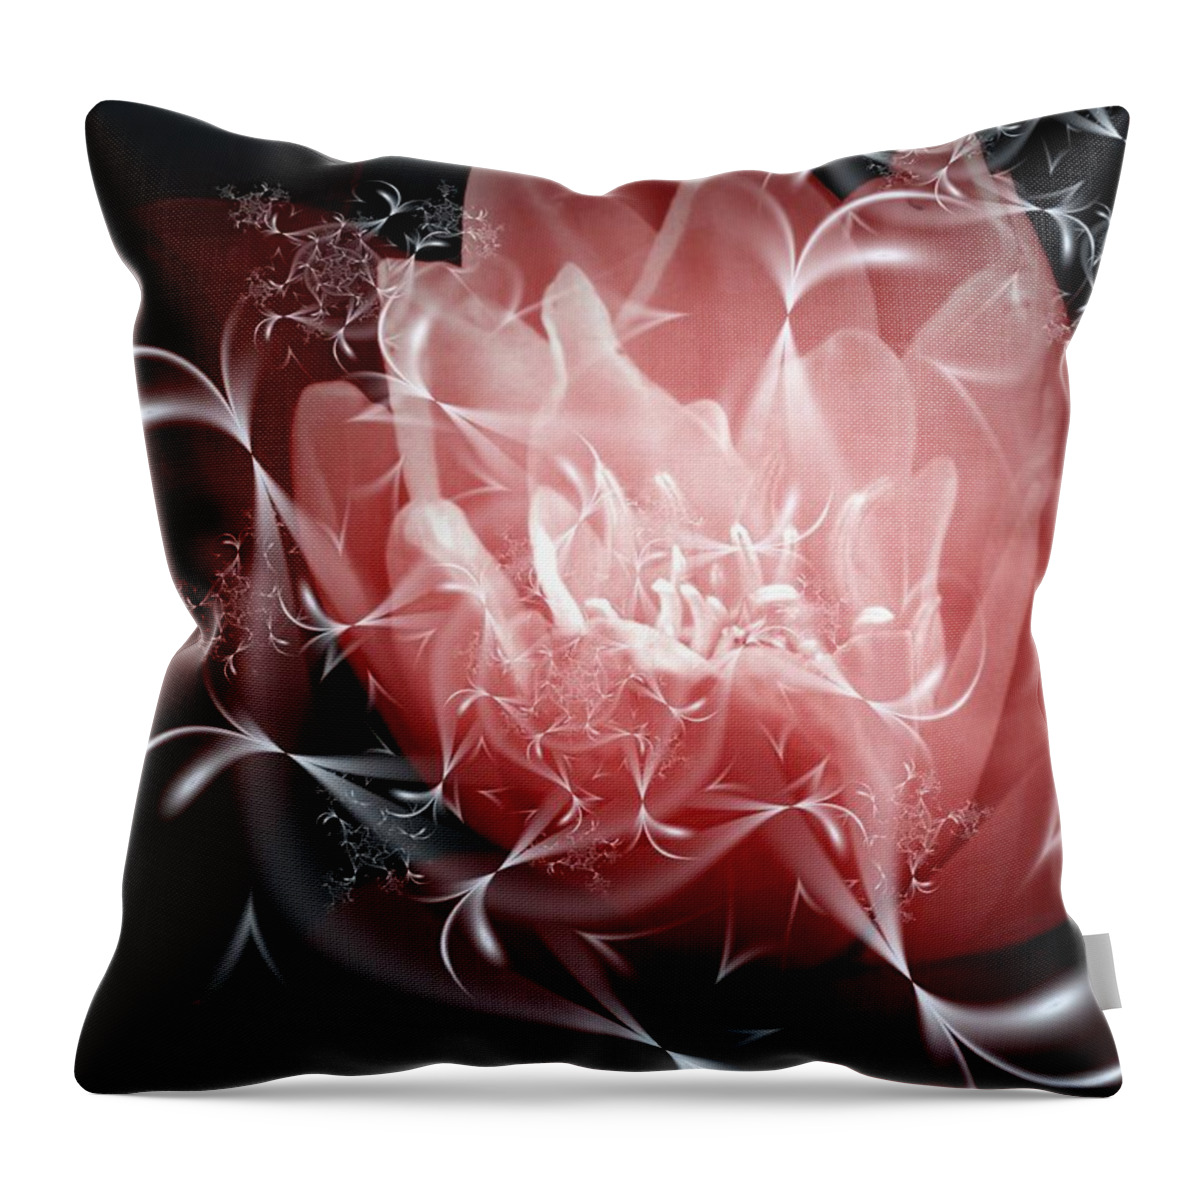 3d Throw Pillow featuring the digital art A Light In The Dark by Issa Bild